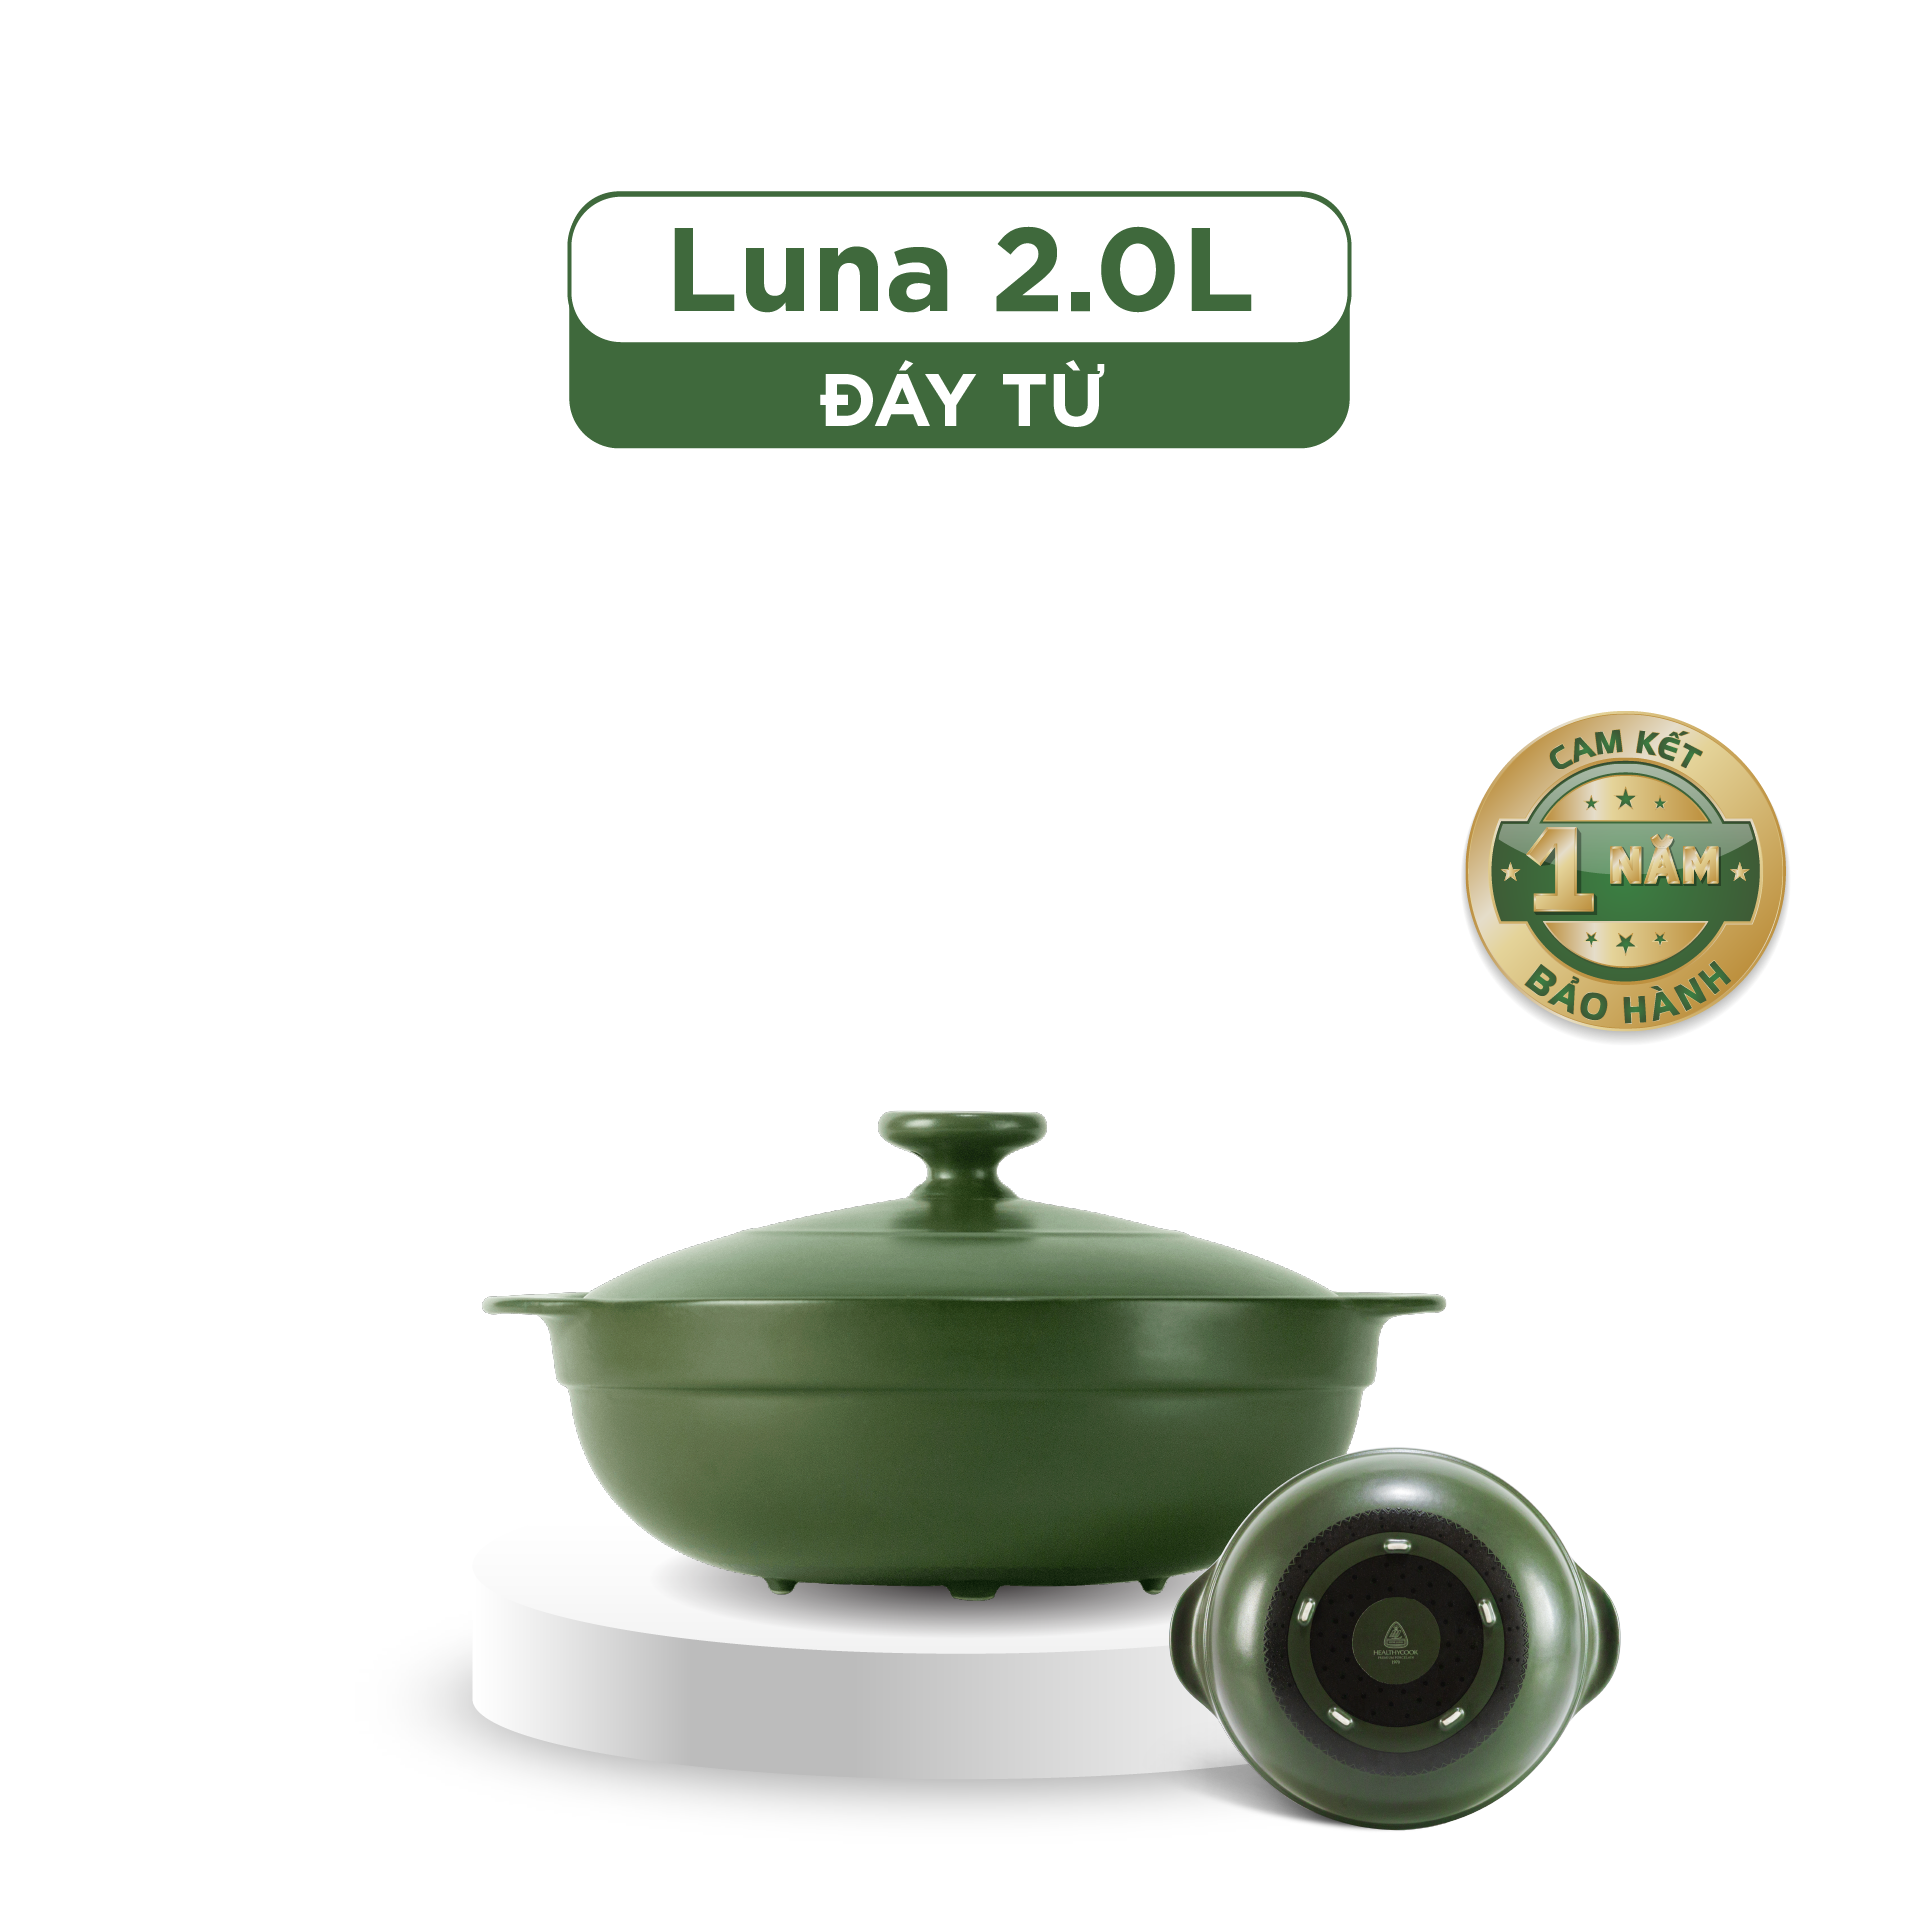 Nồi dưỡng sinh Luna (Nồi cạn) 2.0 L + nắp (CK) (bếp từ) - Xanh Rêu